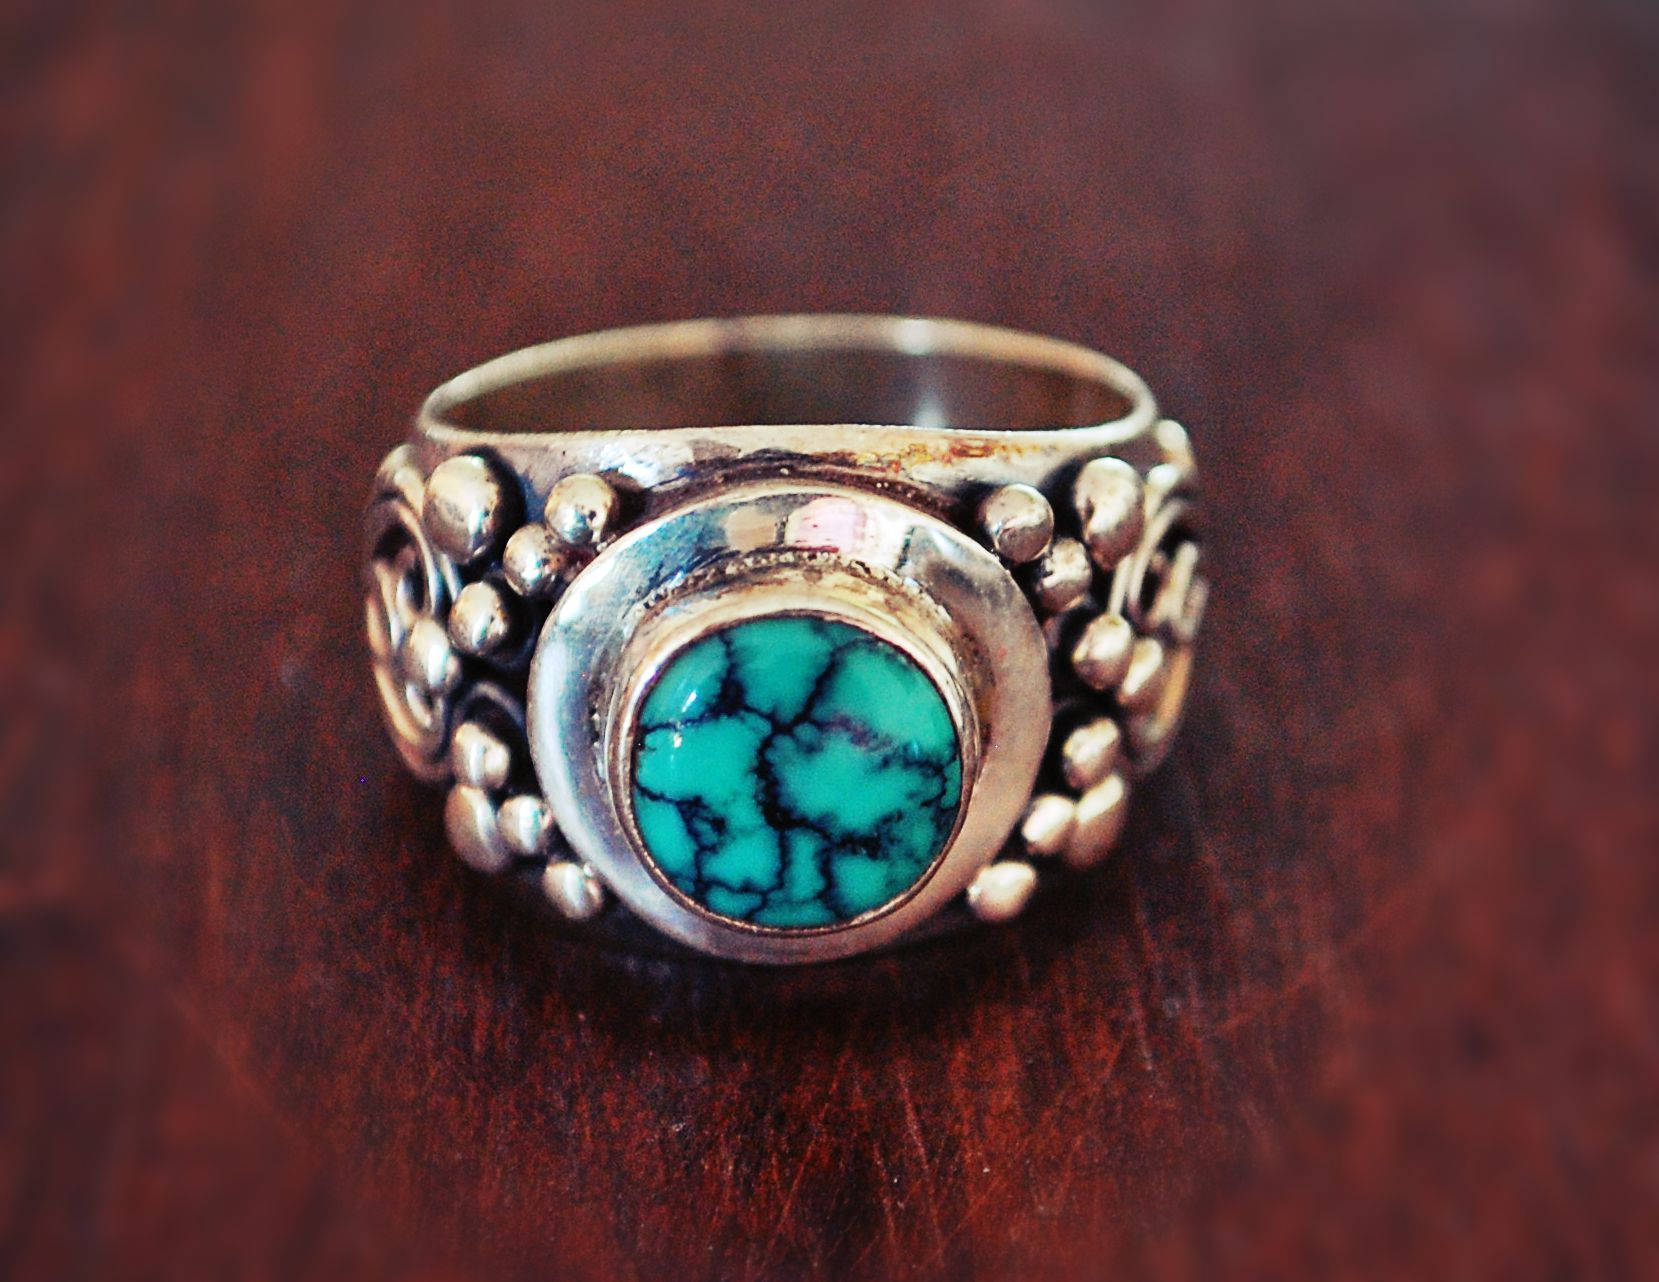 Gypsy Boho Turquoise Ring - Size 7